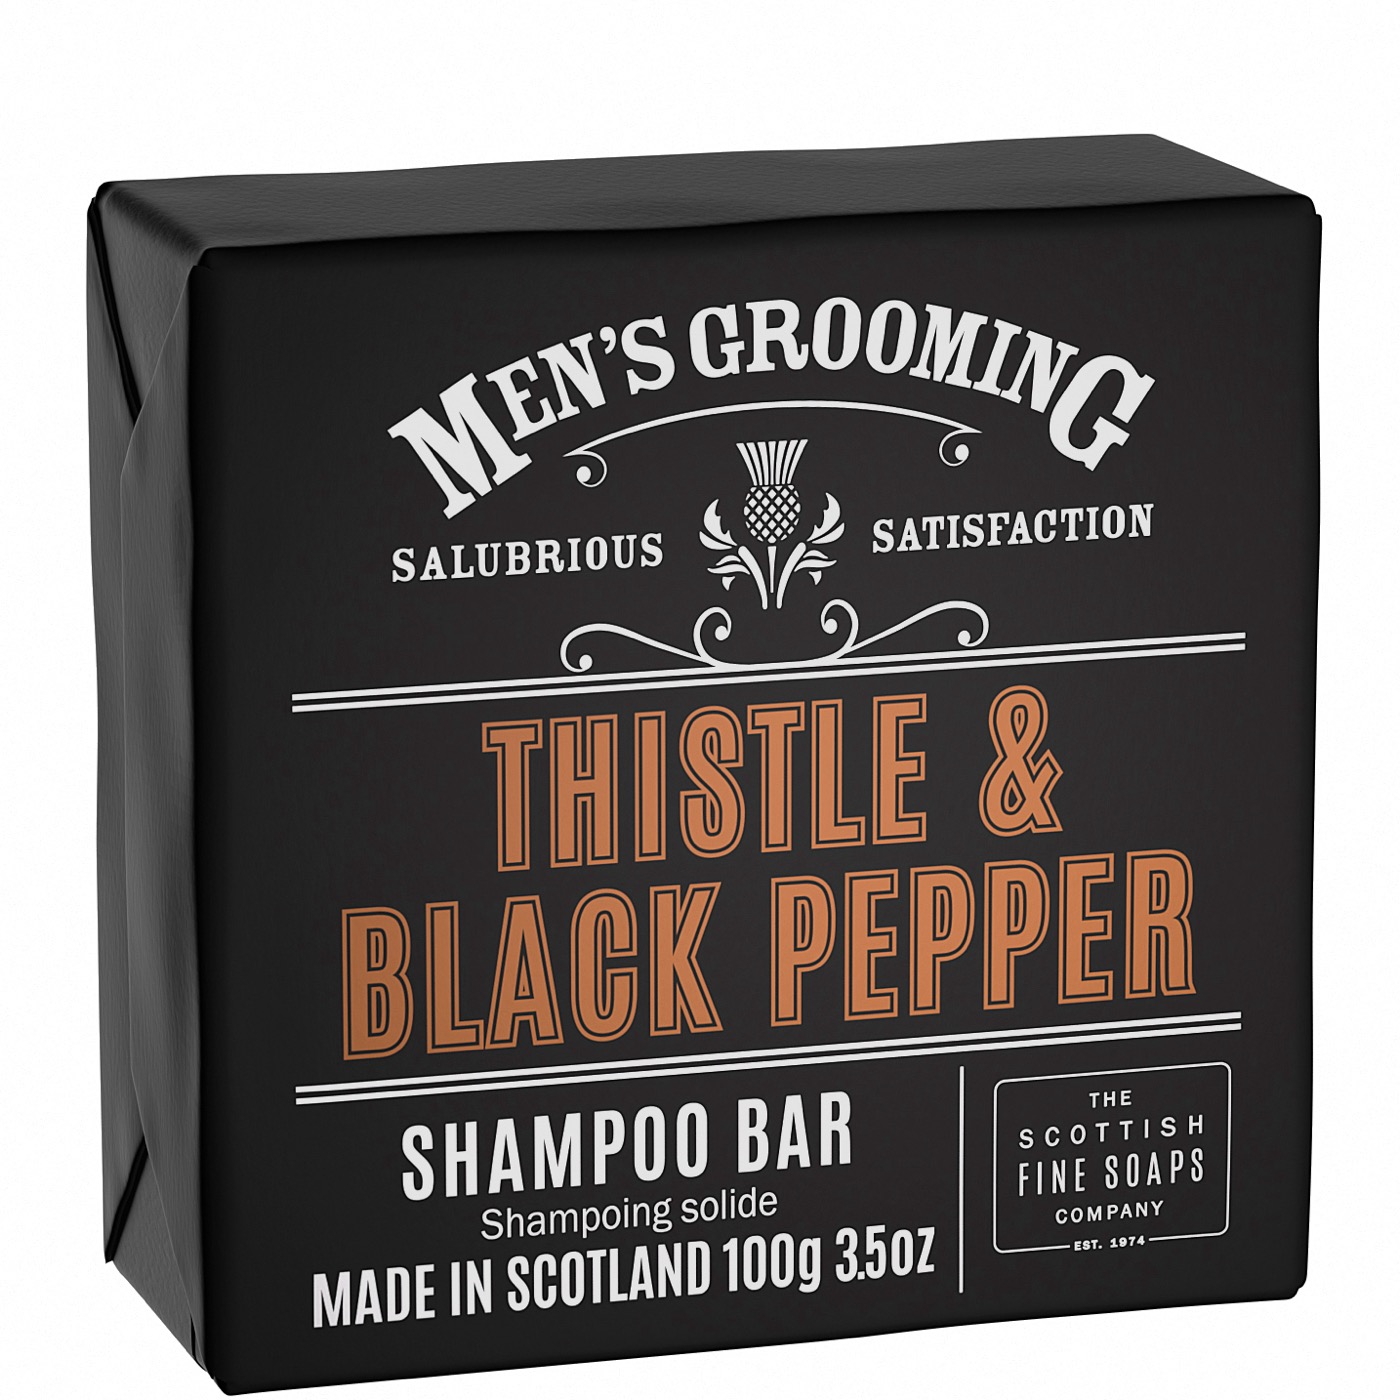 Shampoo bar Bar Thistle & Black Pepper - normaal haar & hoofdhuid